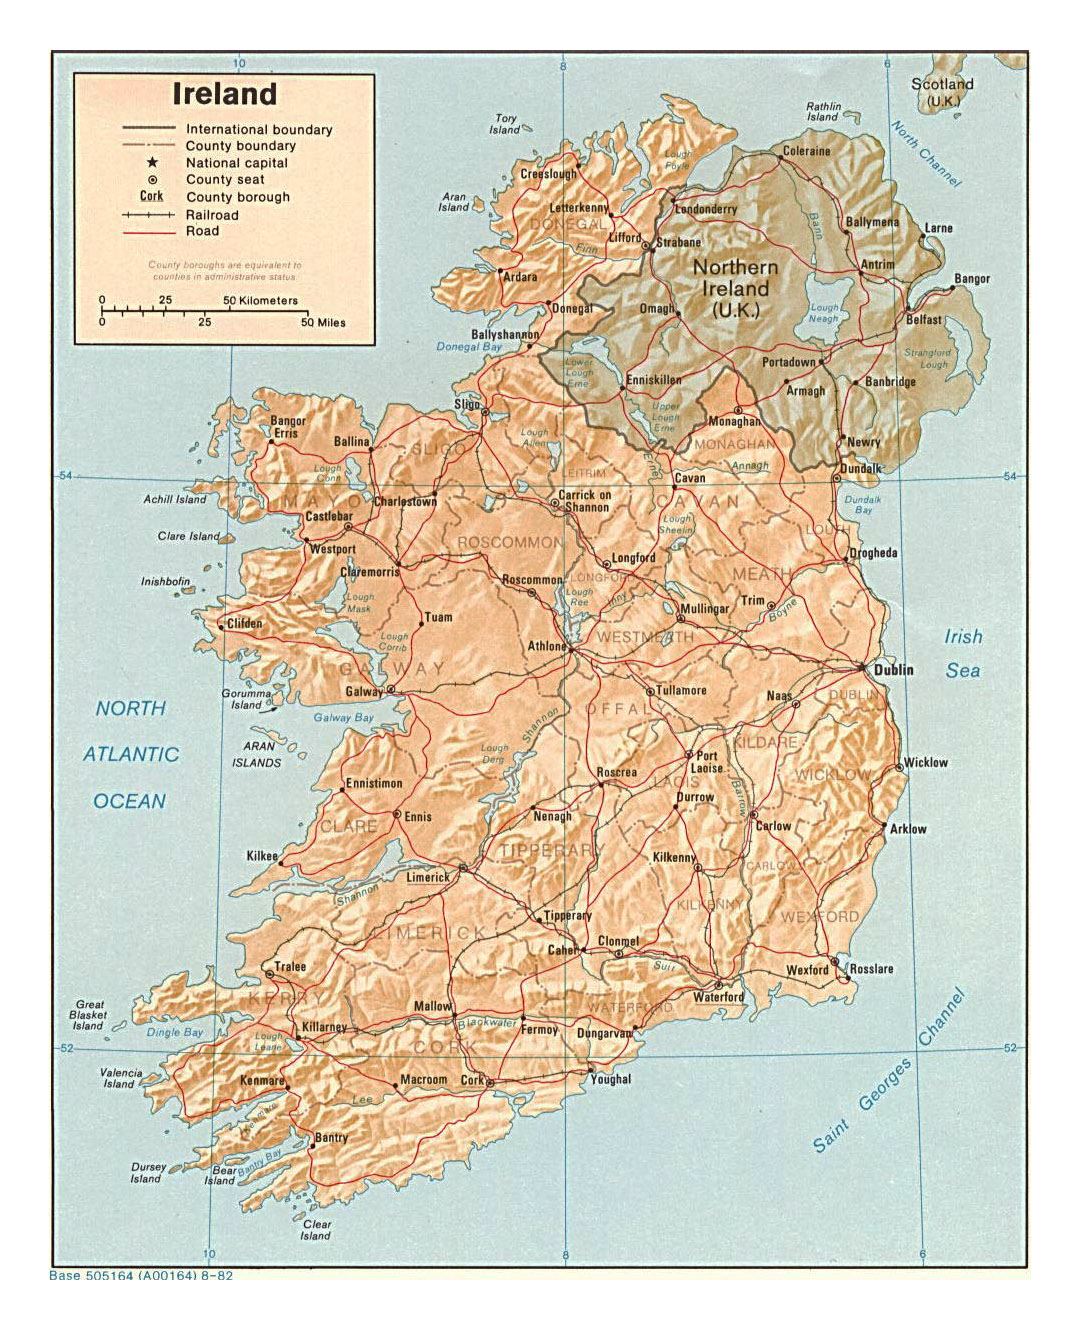 Mapa político y administrativo detallado de Irlanda con alivio, las carreteras y las principales ciudades - 1982